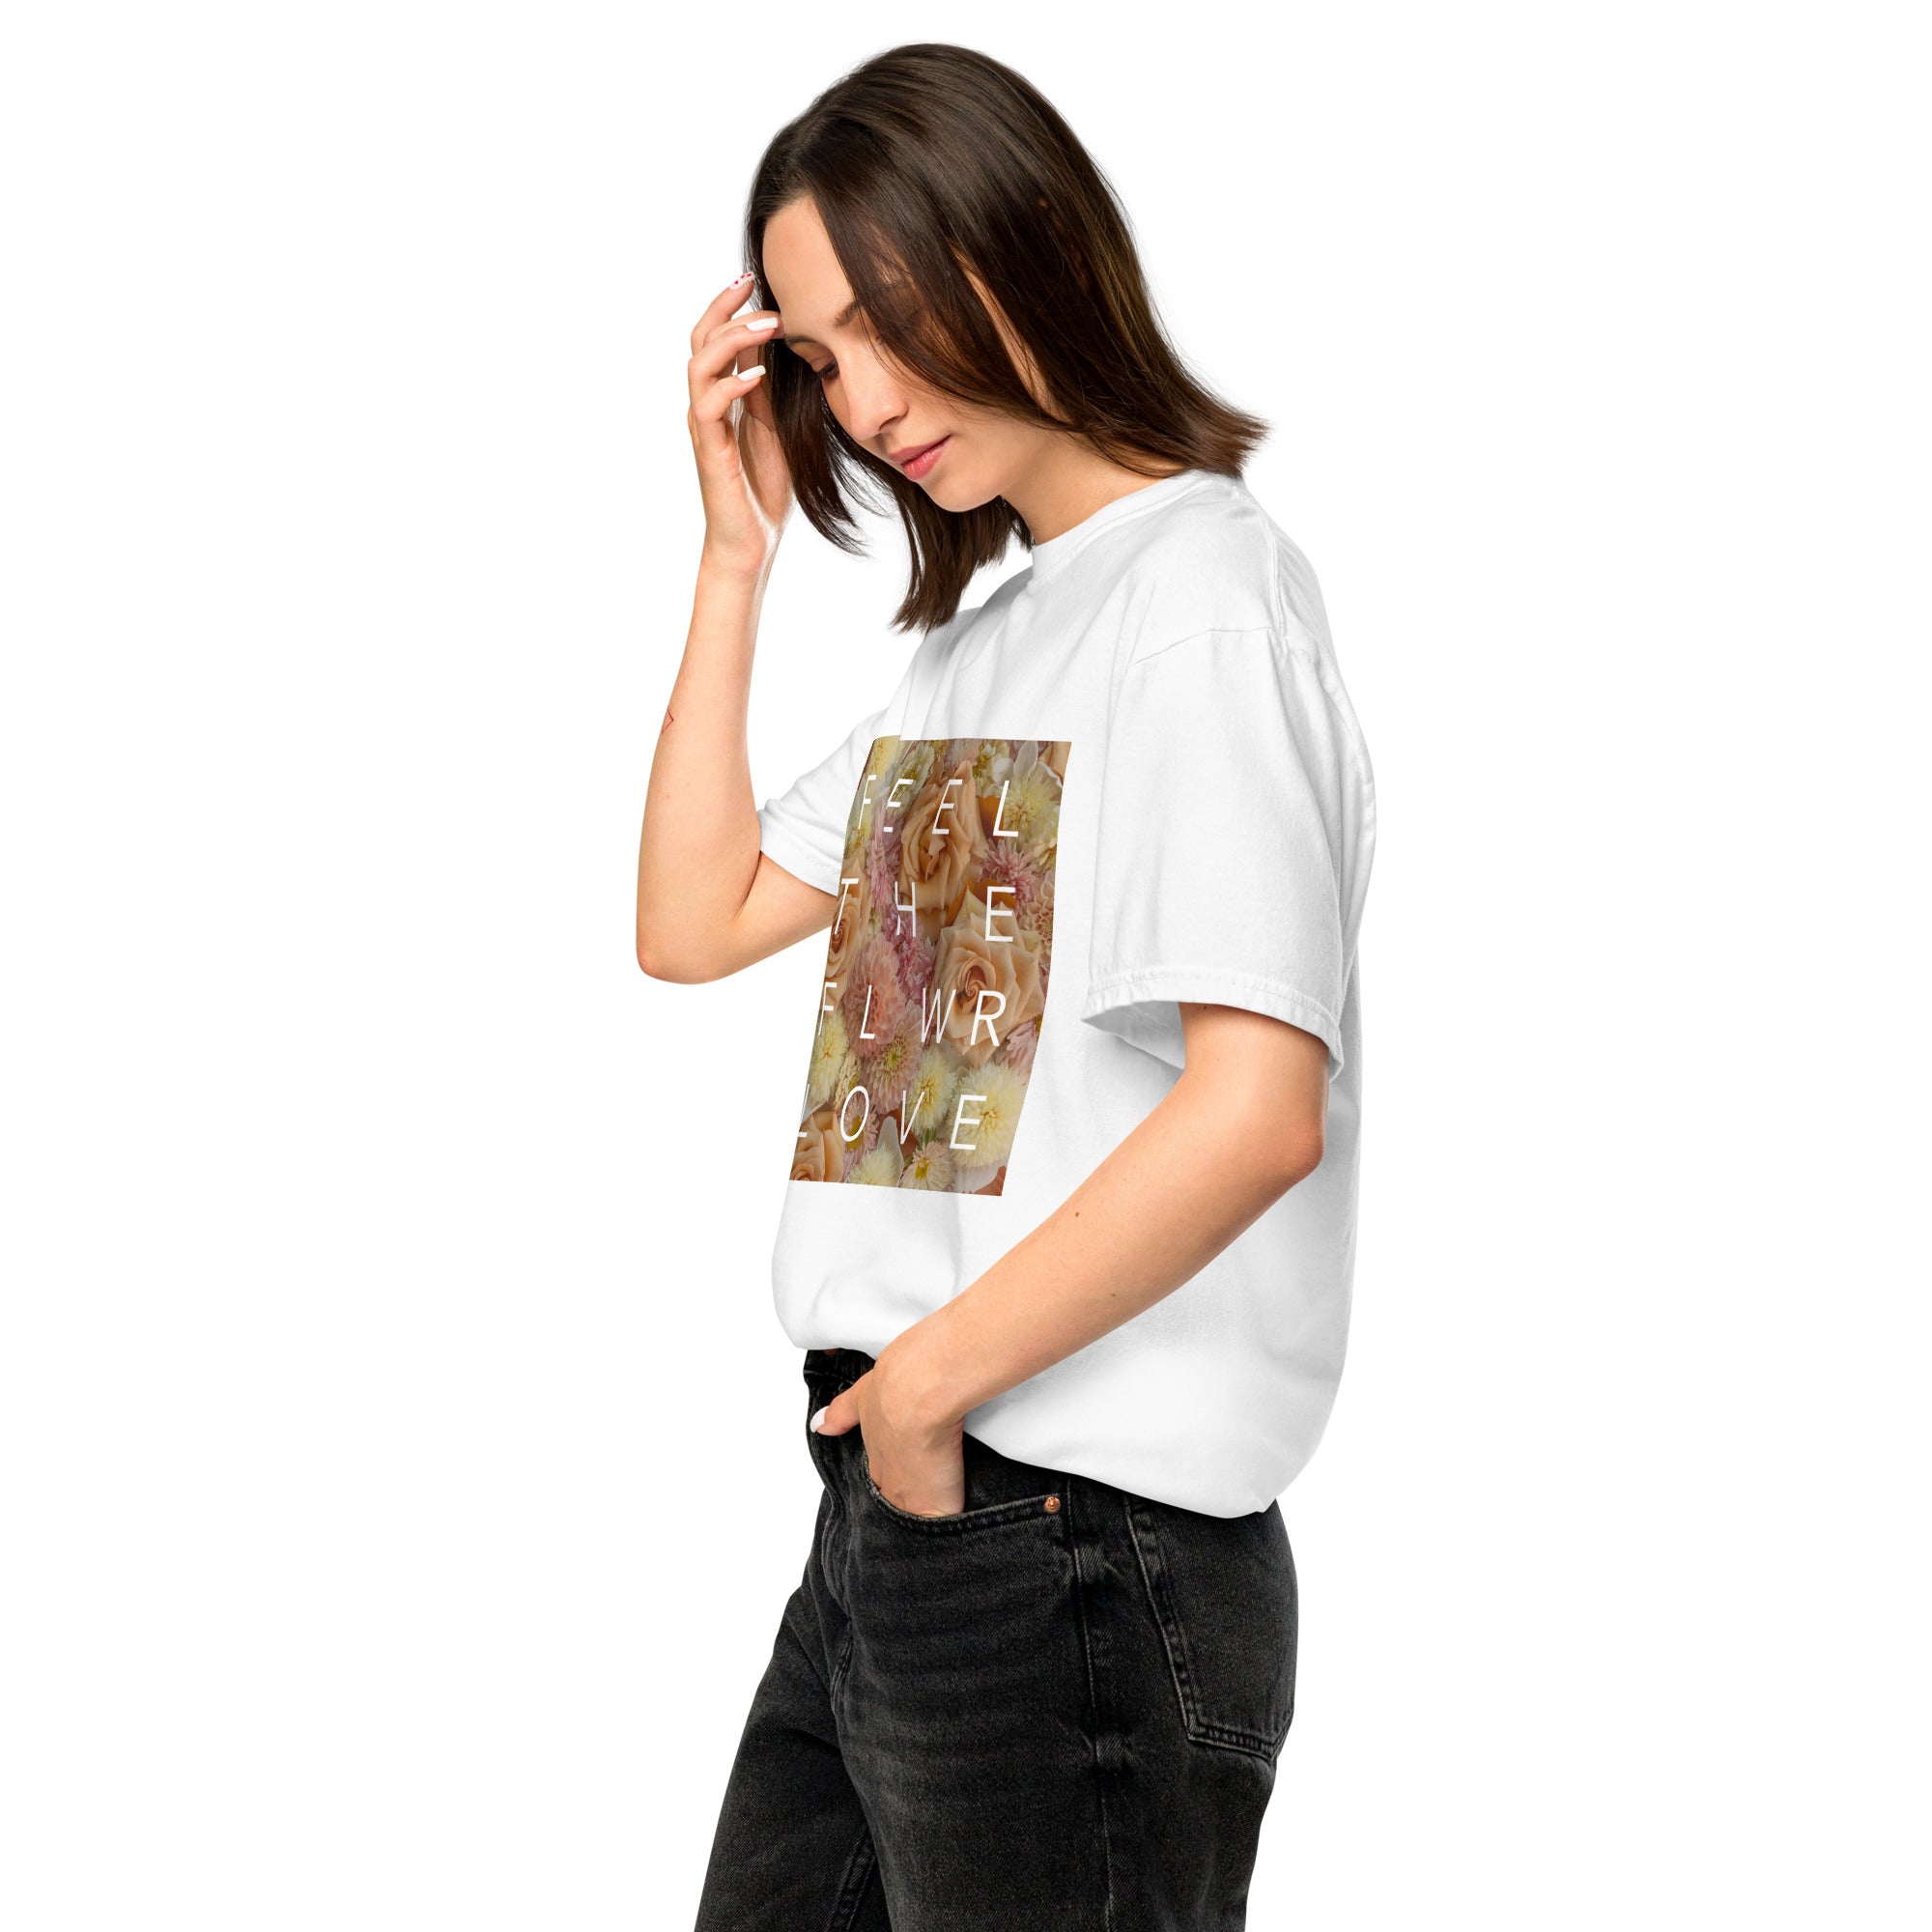 Feel the Flower Love - T shirt (Unisex)